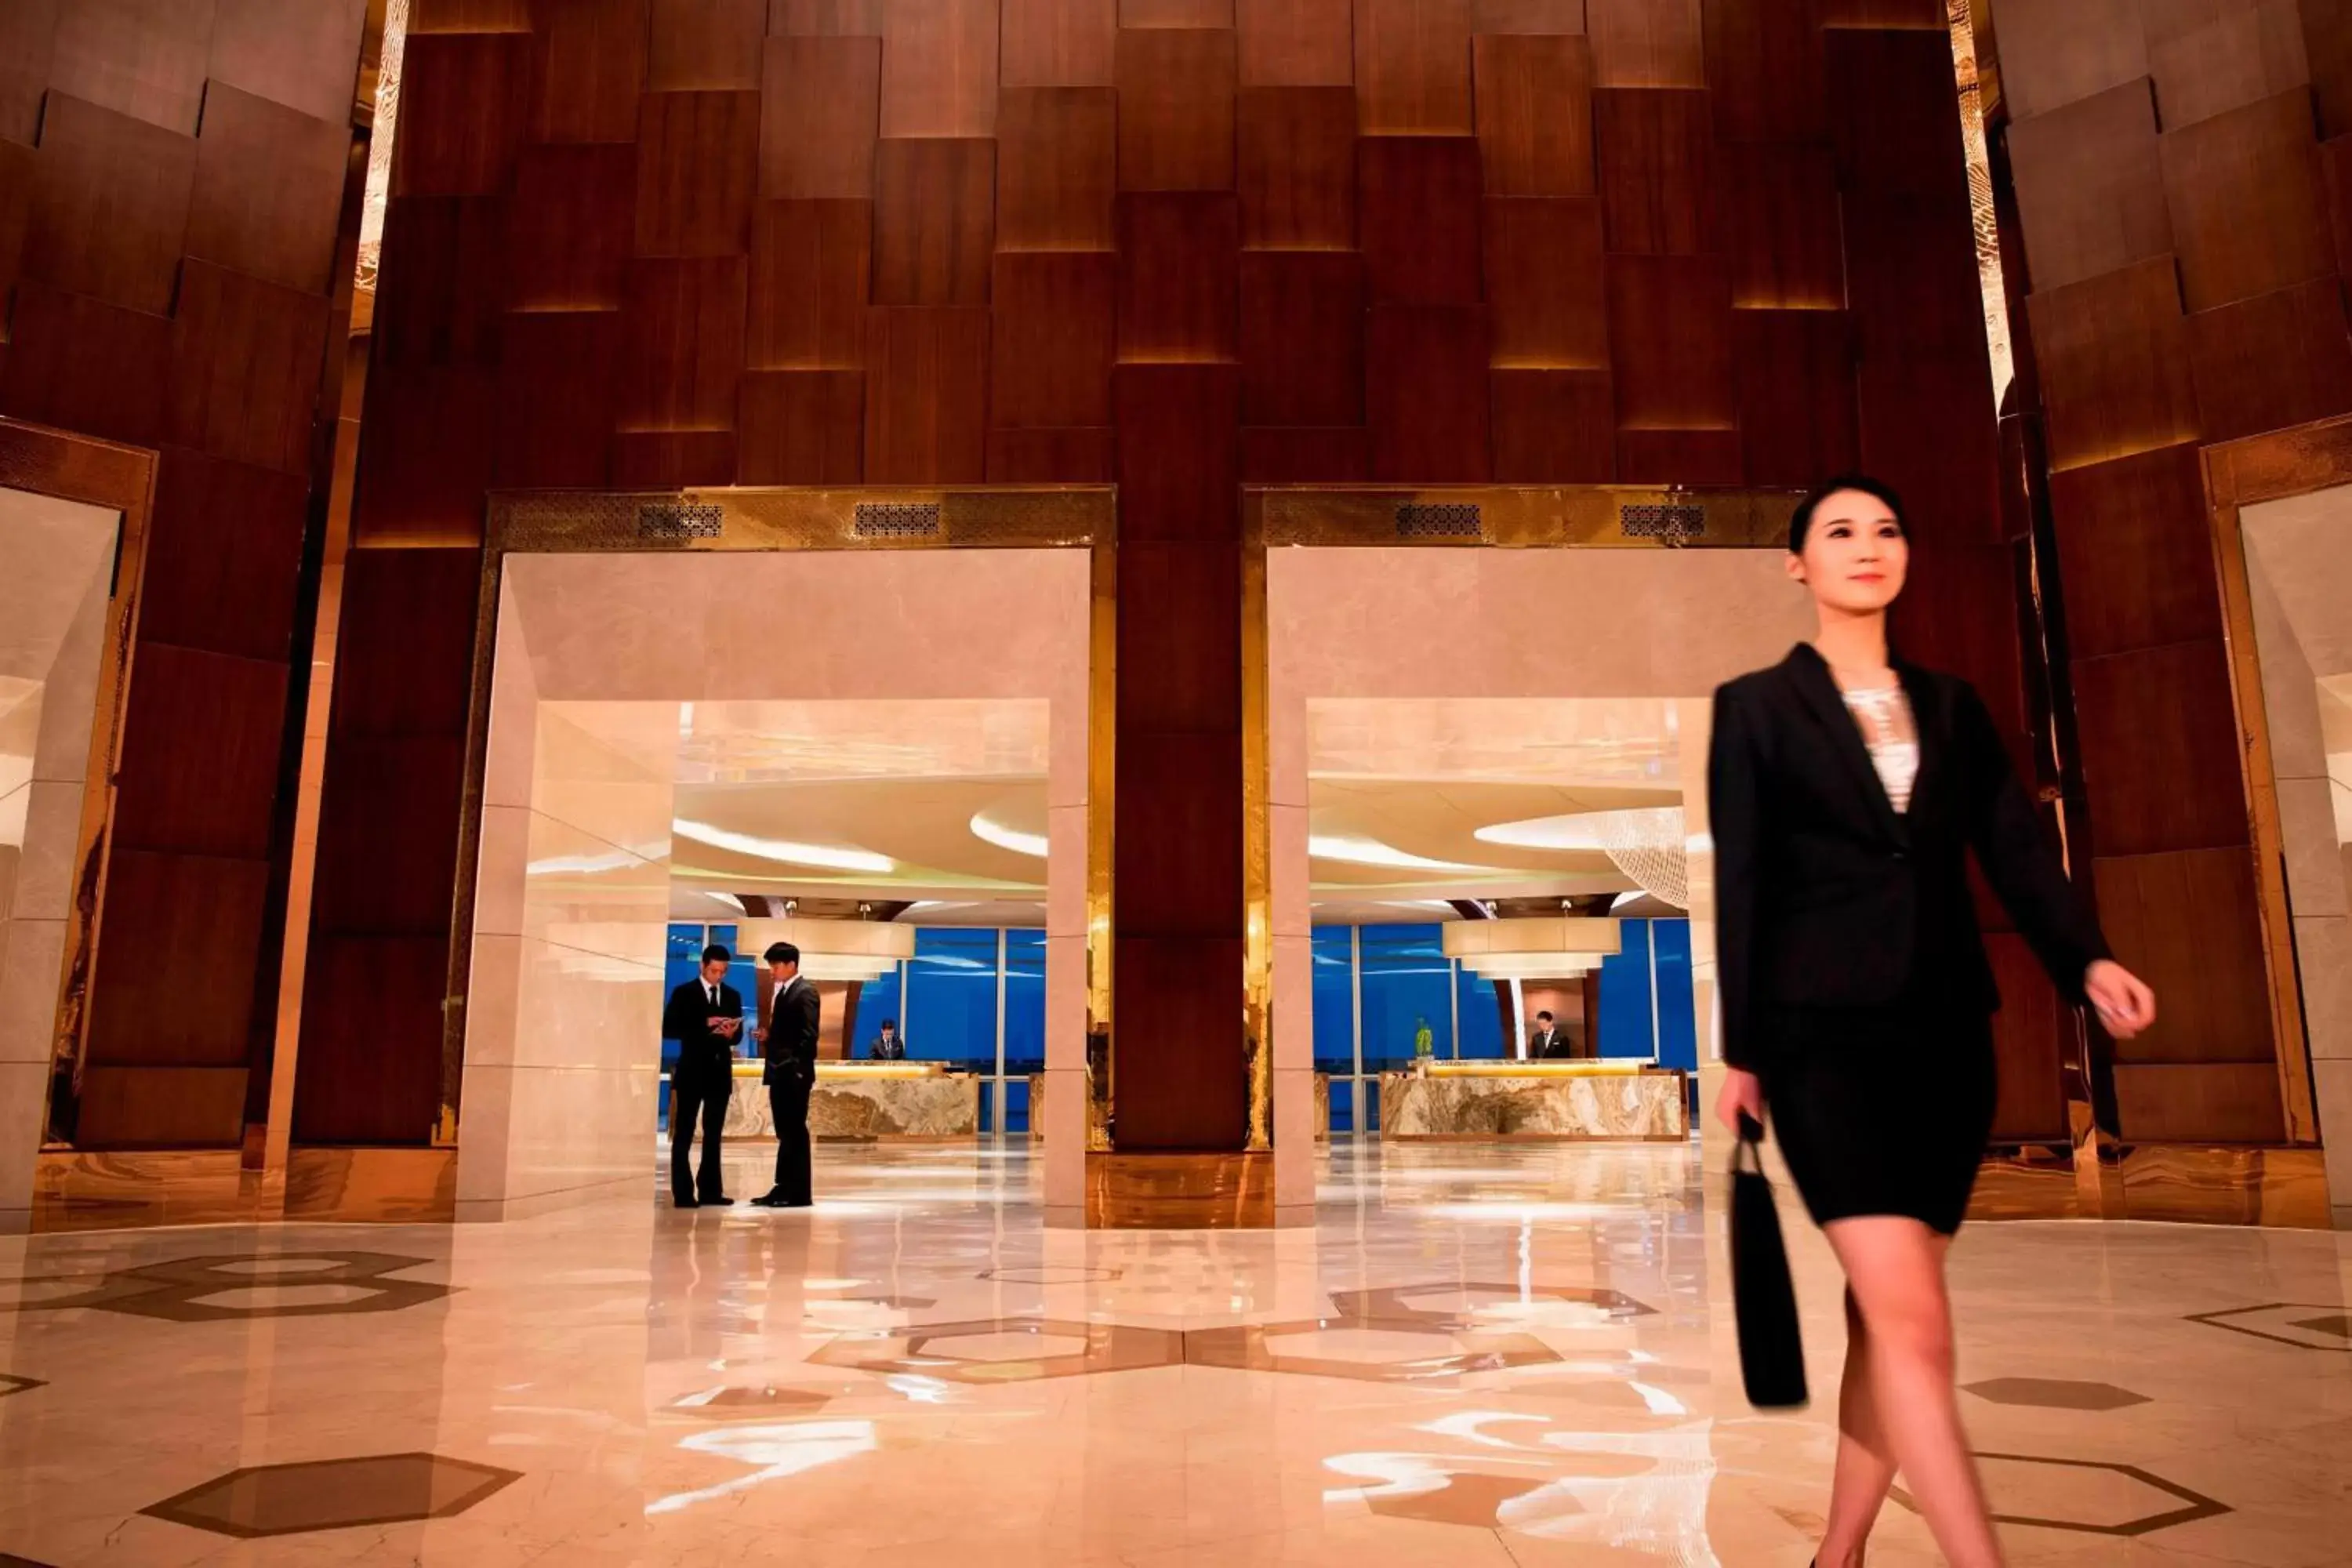 Lobby or reception in JW Marriott Hotel Zhengzhou